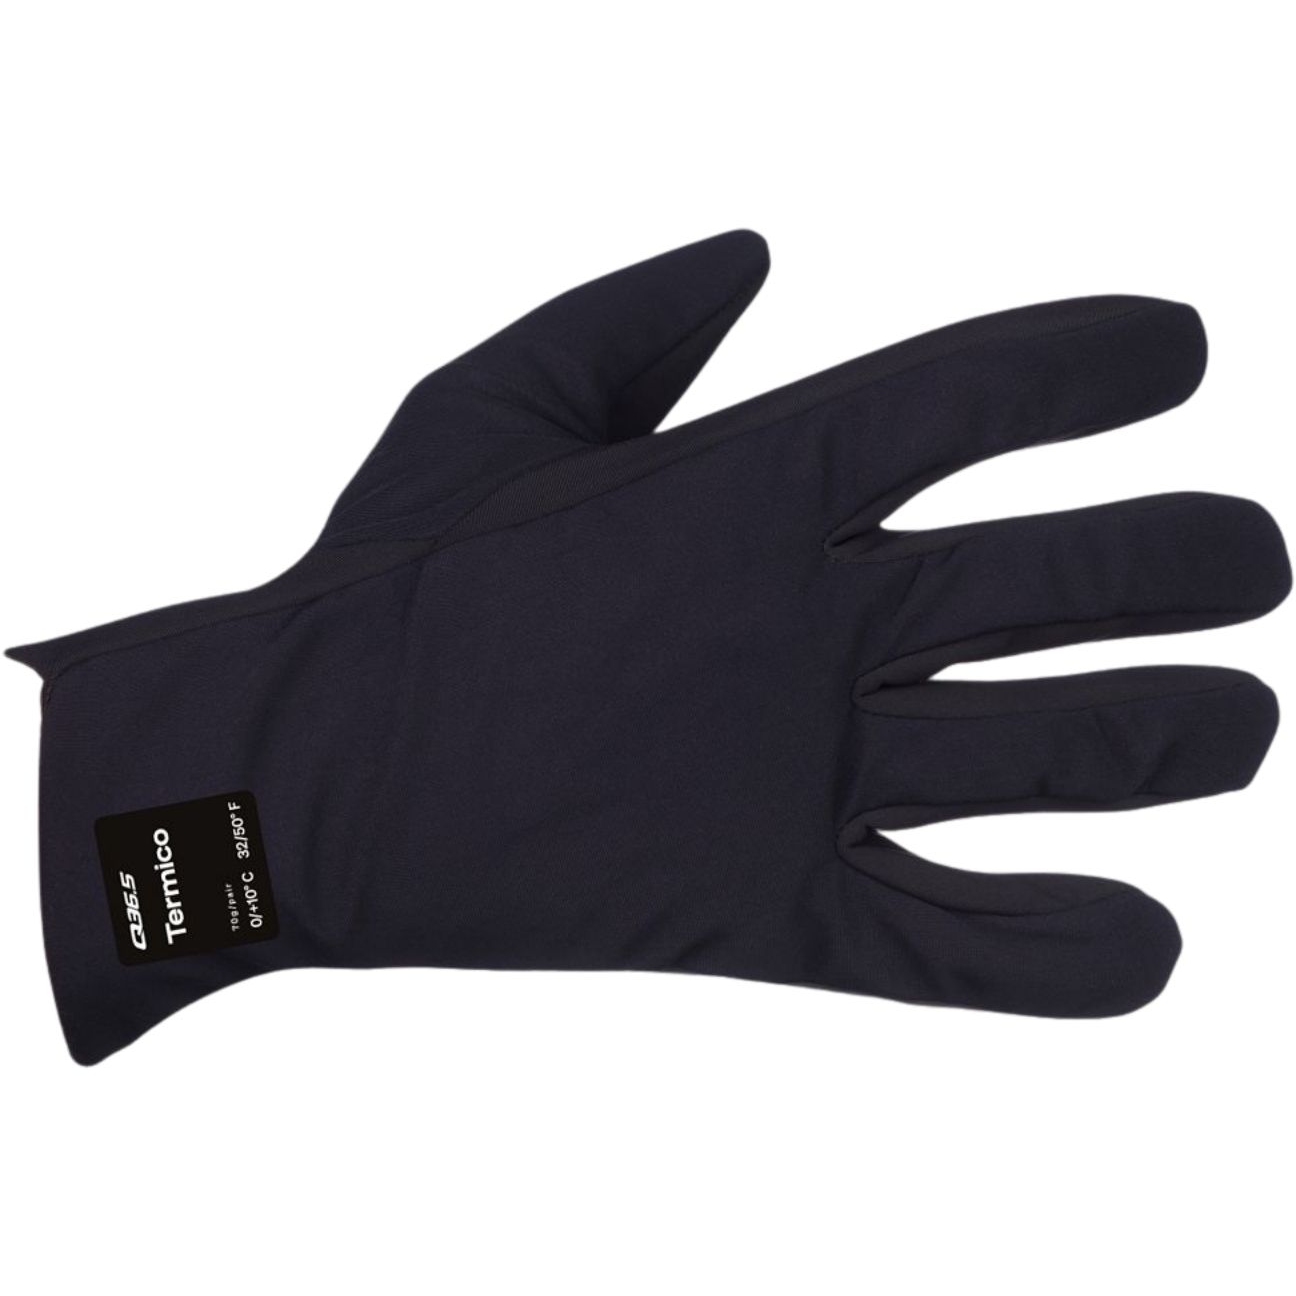 Produktbild von Q36.5 Termico Vollfinger Handschuhe - schwarz